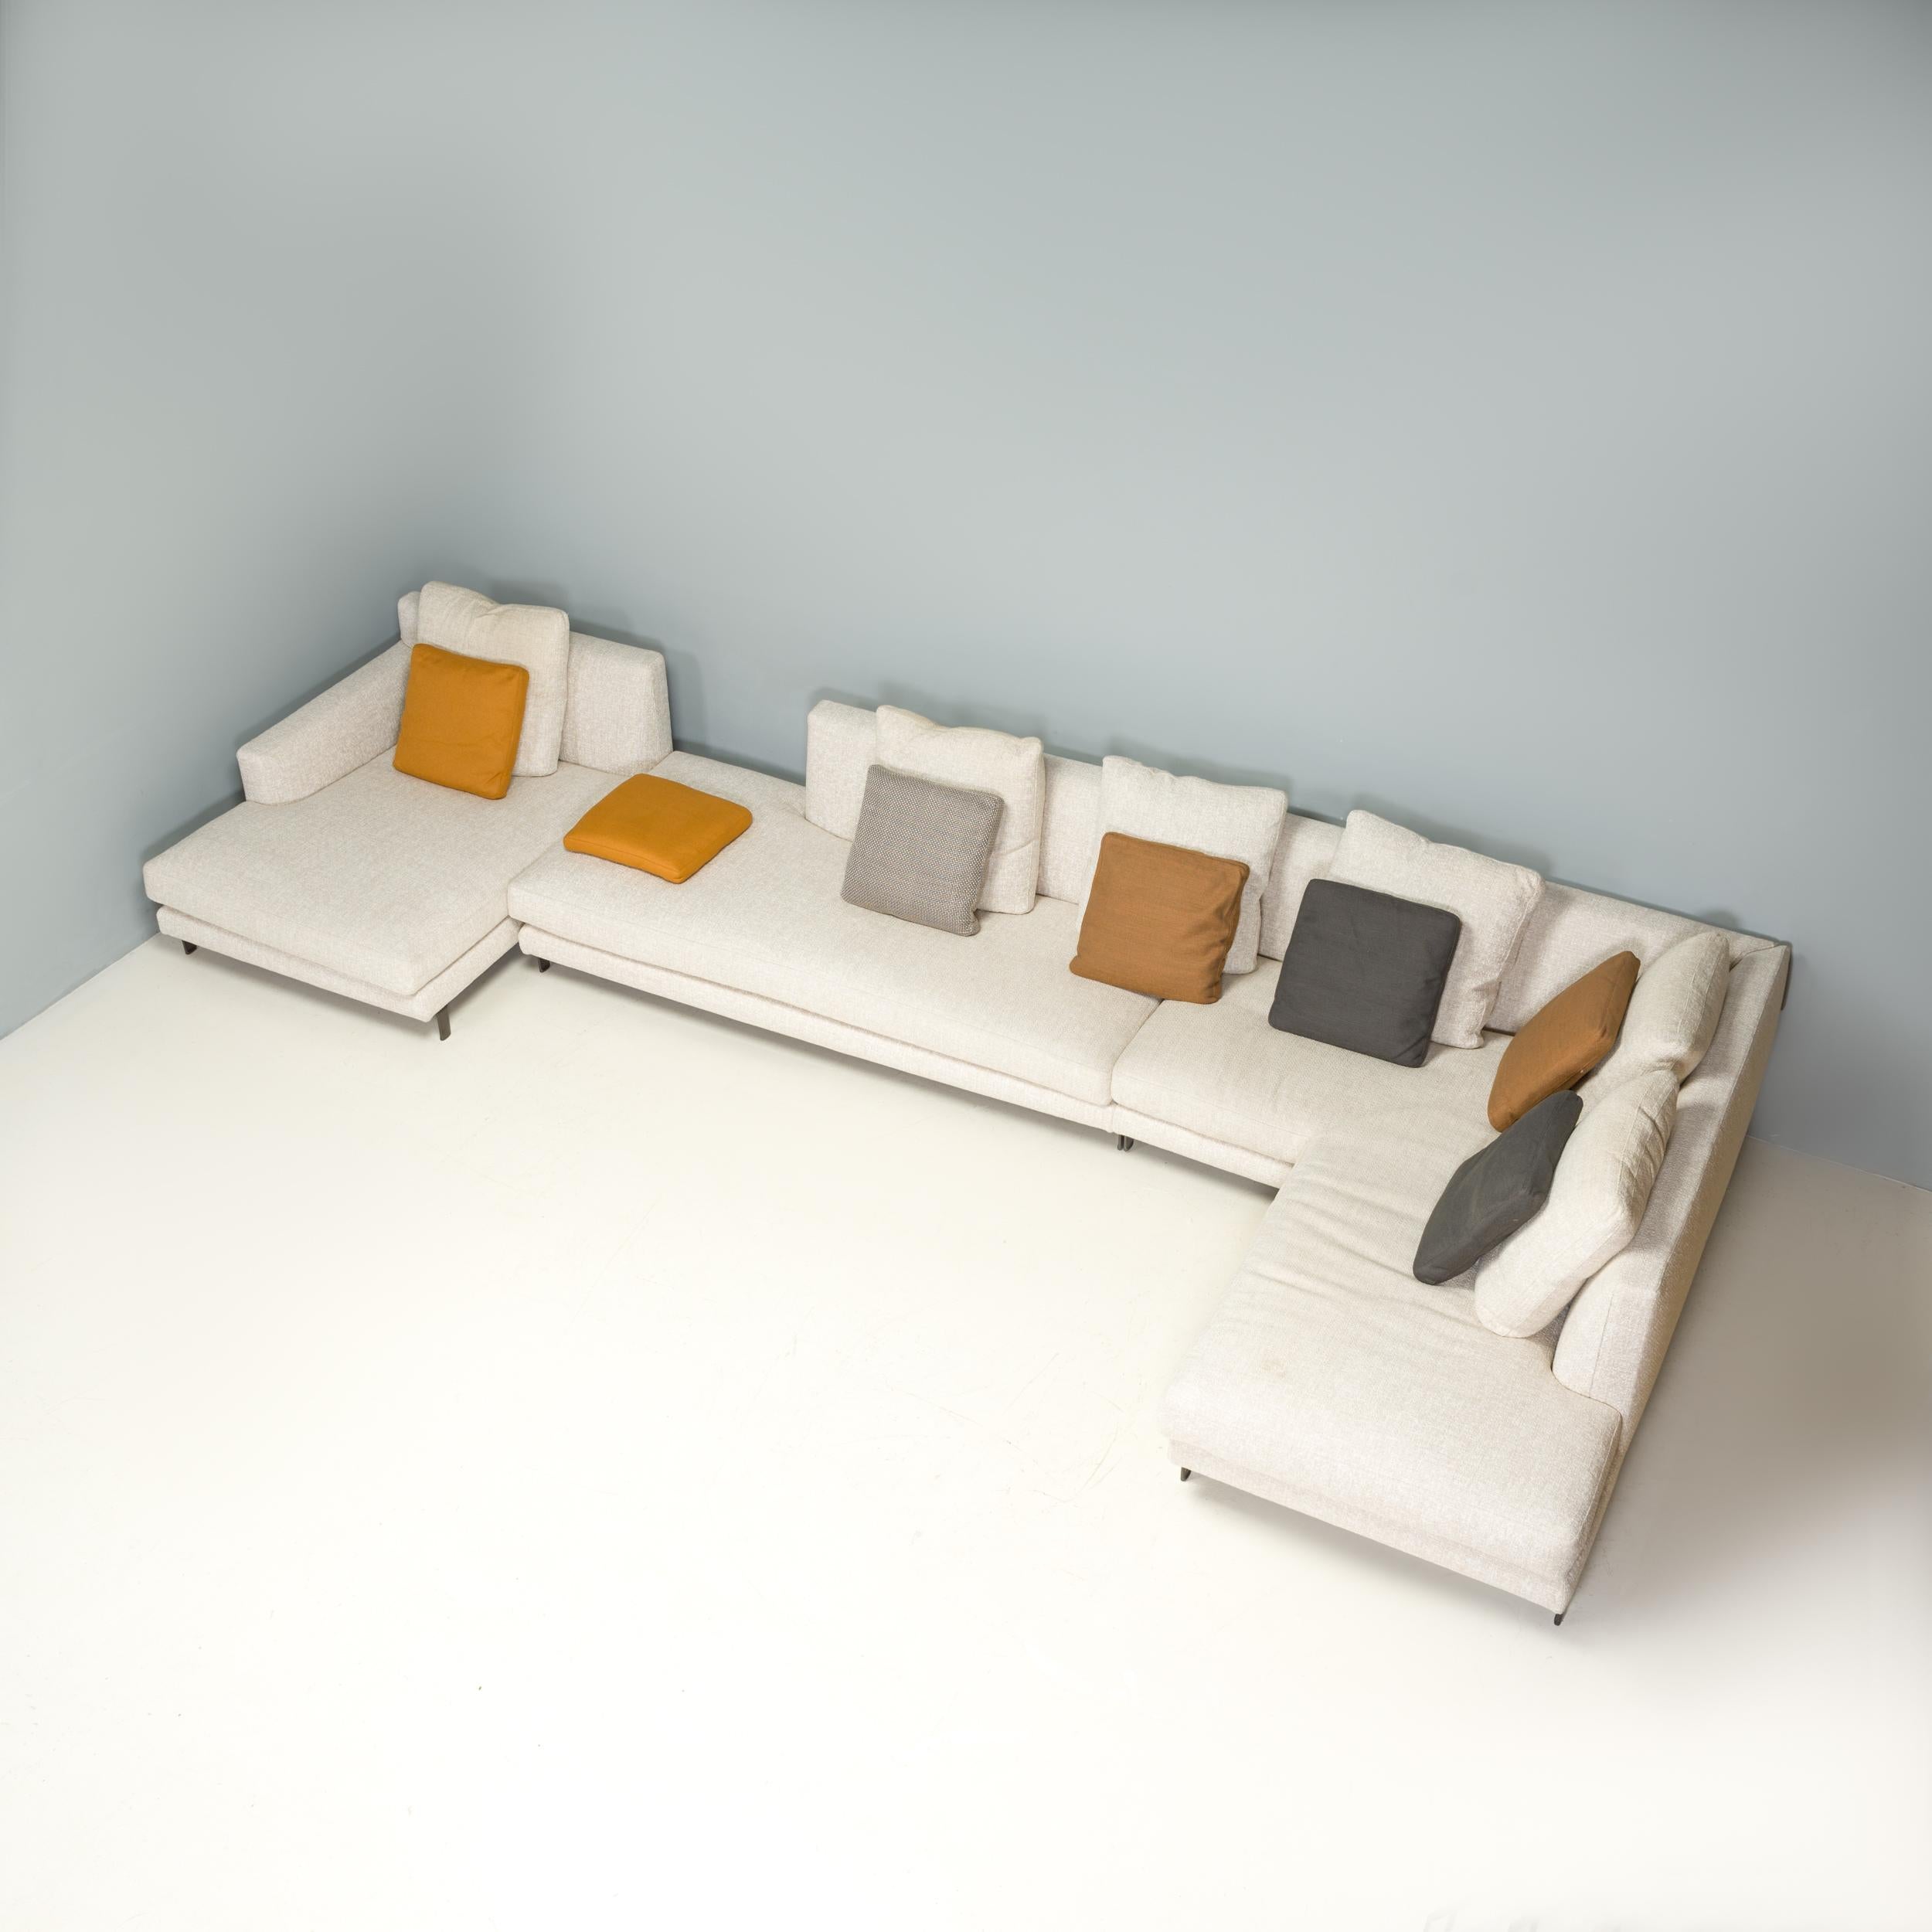 Das von Rodolfo Dordoni für Minotti entworfene Sofa Allen zeichnet sich durch eine klassische italienische Ästhetik aus, die Stil und Komfort perfekt vereint.

Dieses Set besteht aus einem Ecksofa und einer passenden Chaiselongue, die eine